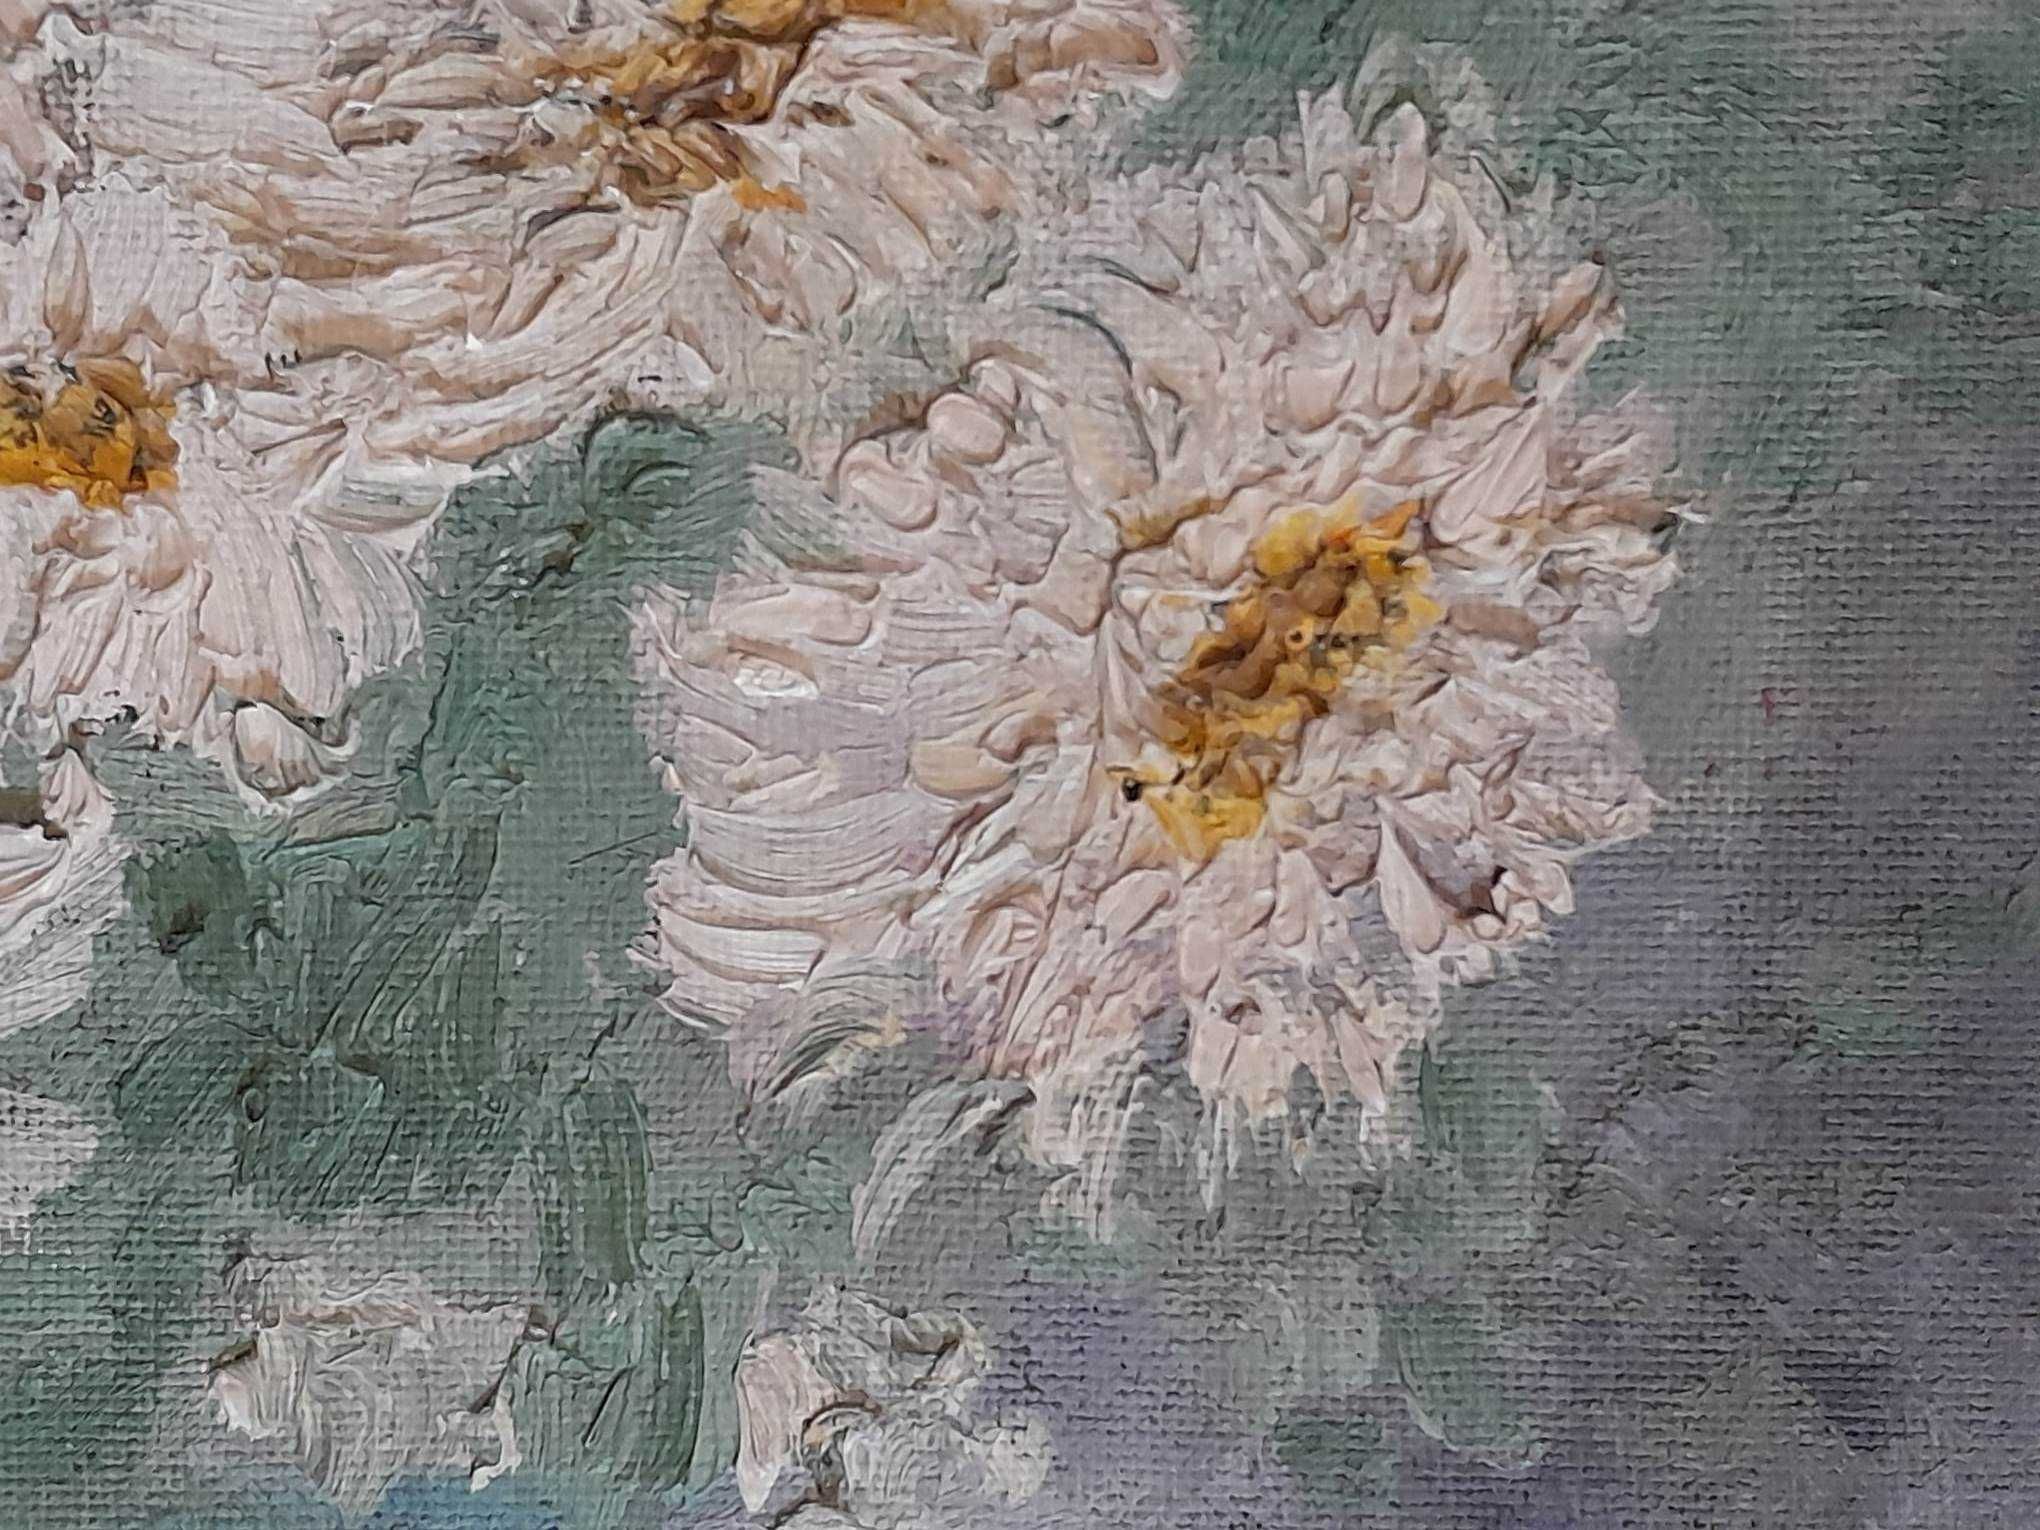 Vas cu flori, inramat,ulei pe placaj, 38x28 cm  semnat MP 1979